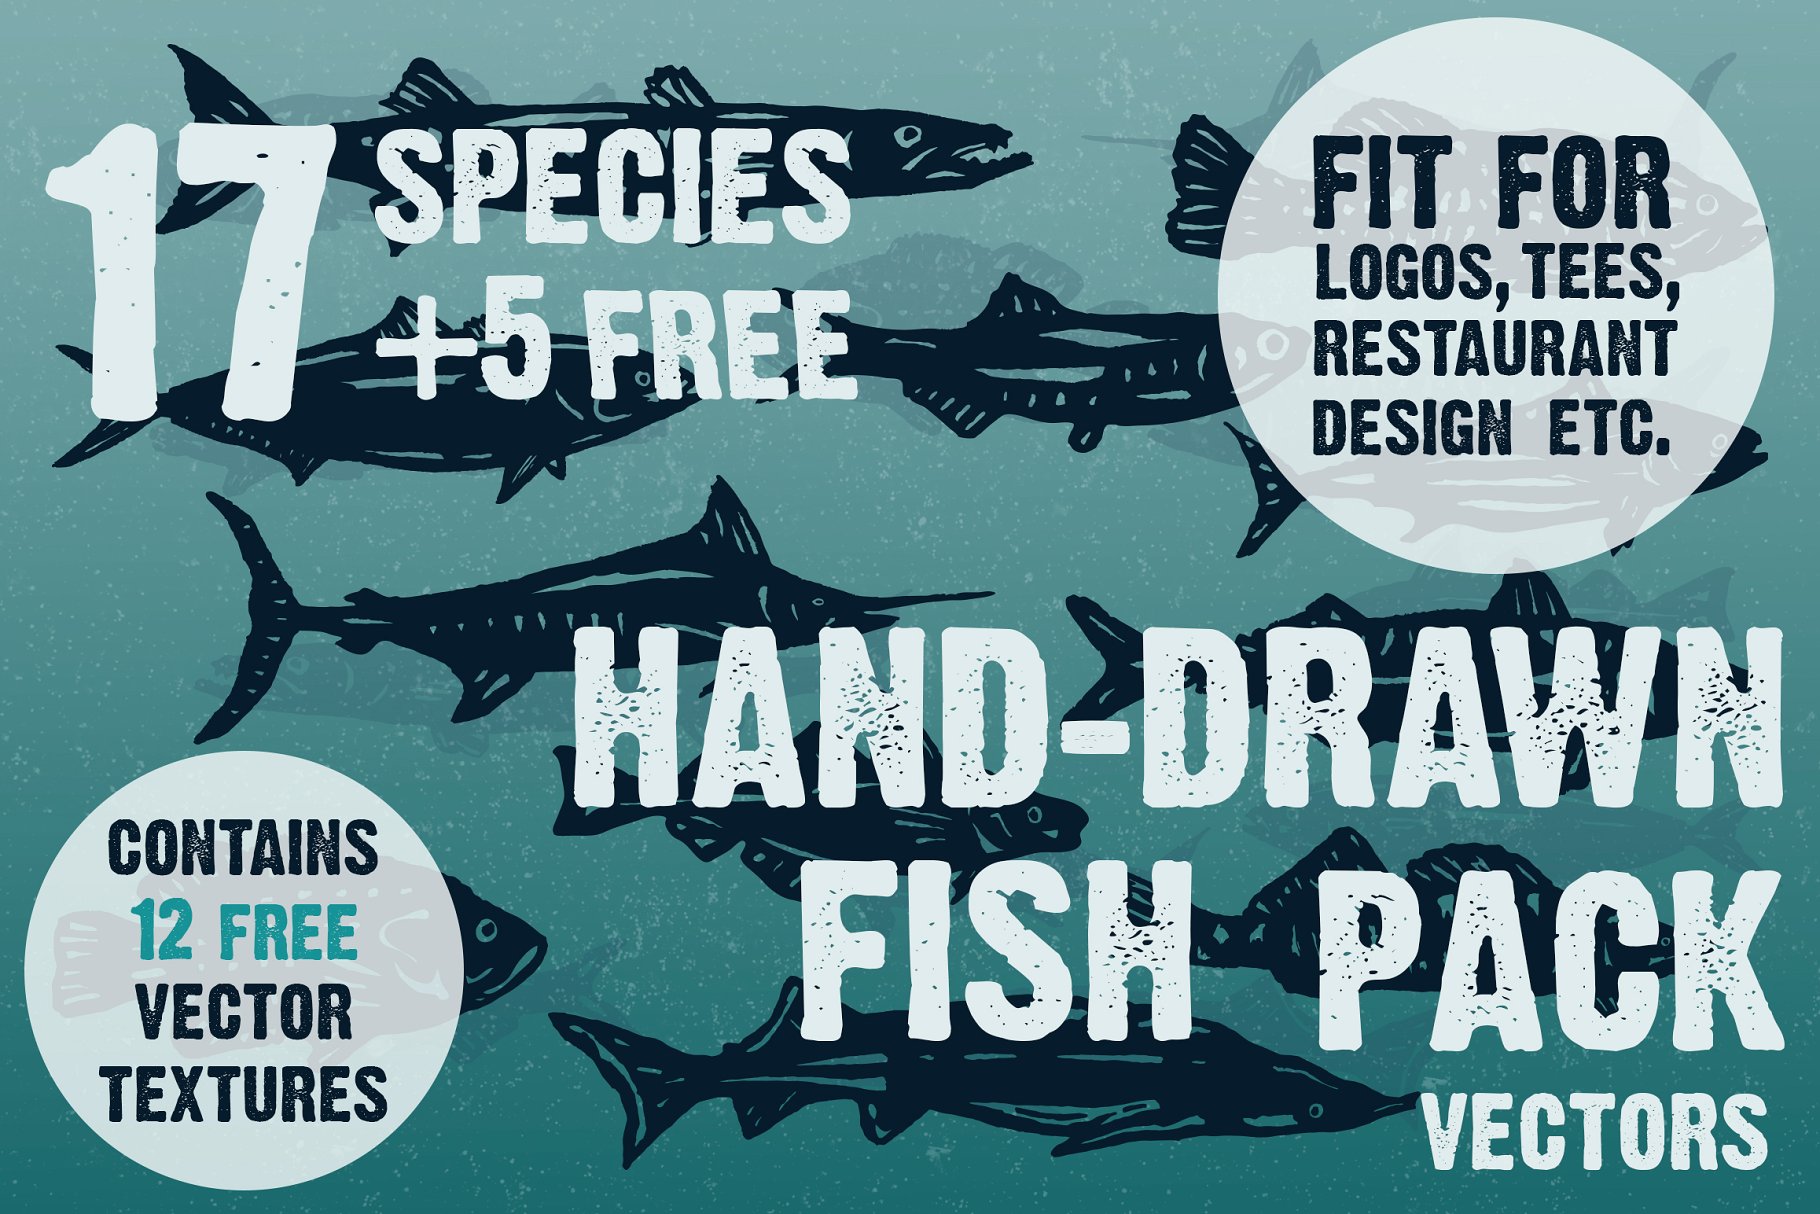 复古单色海洋&河流鱼类印刷插图 Hand-drawn fish vectors插图